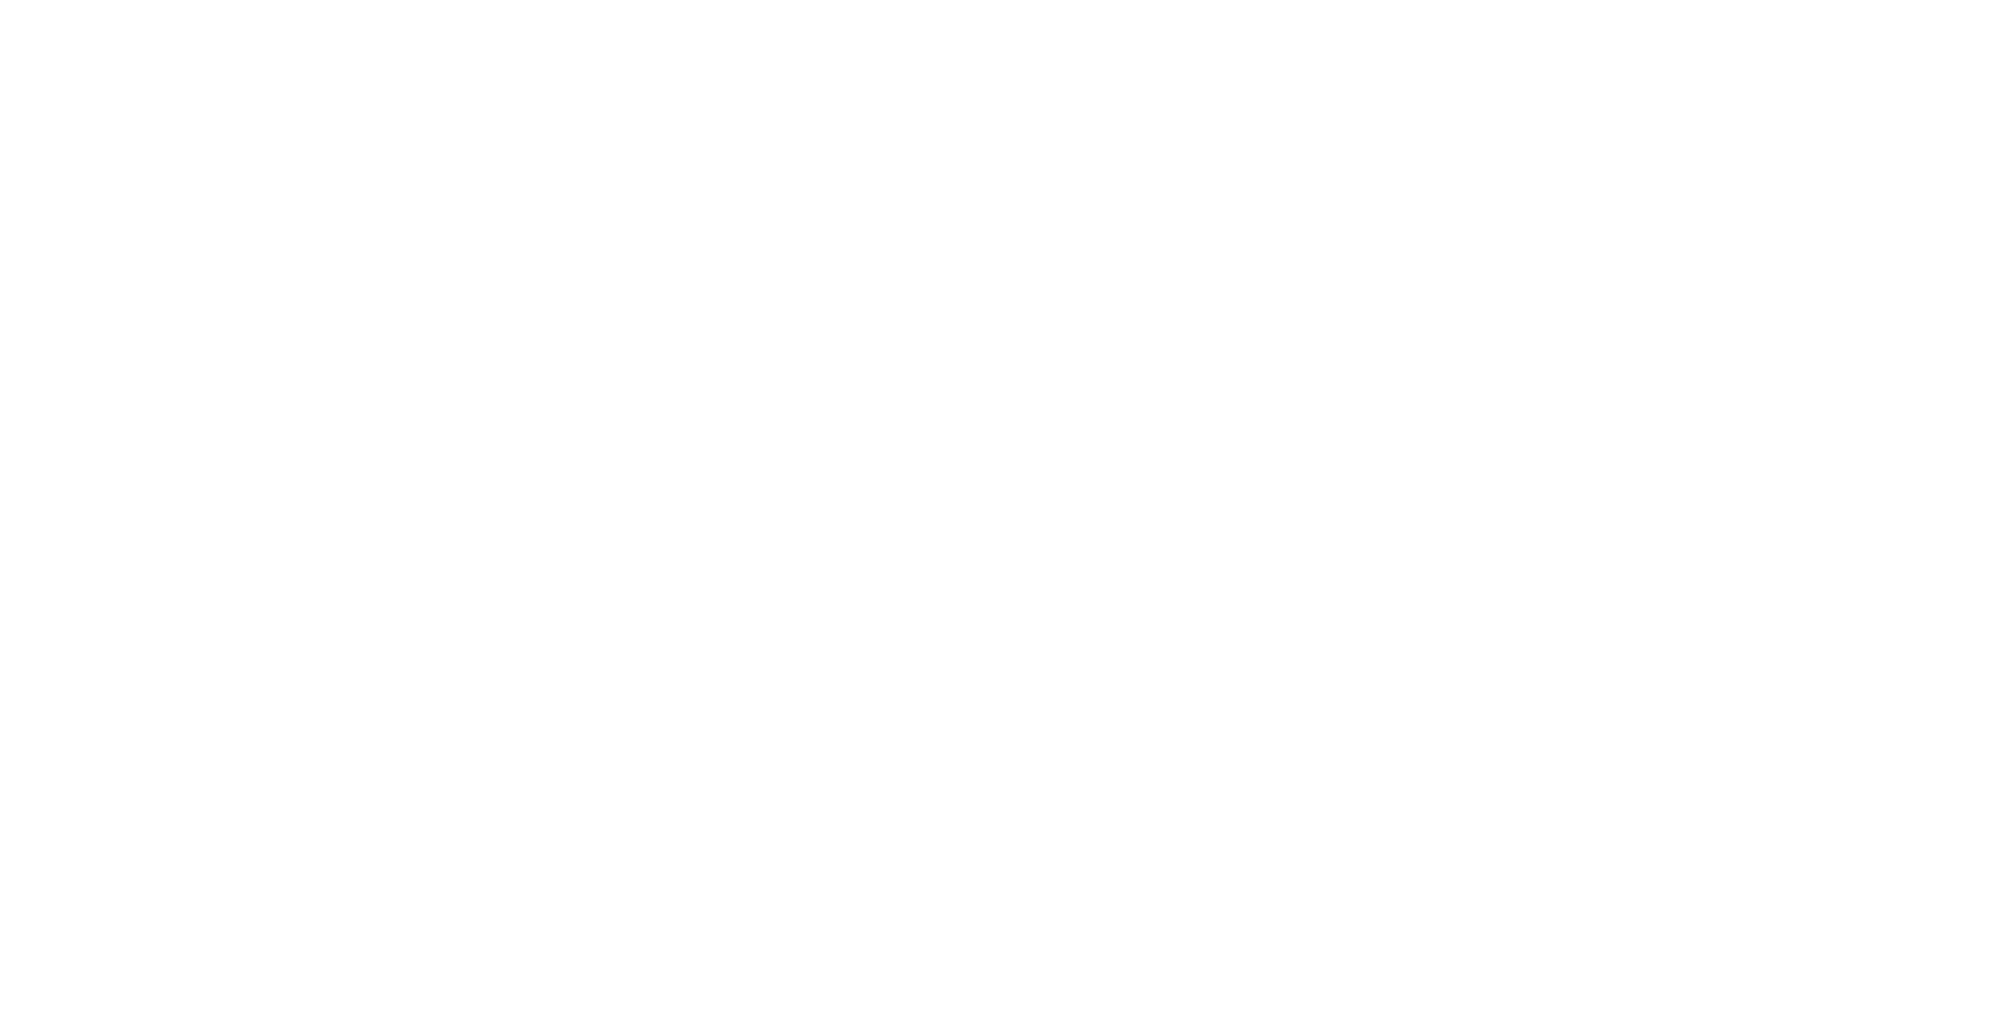 savage coffee café